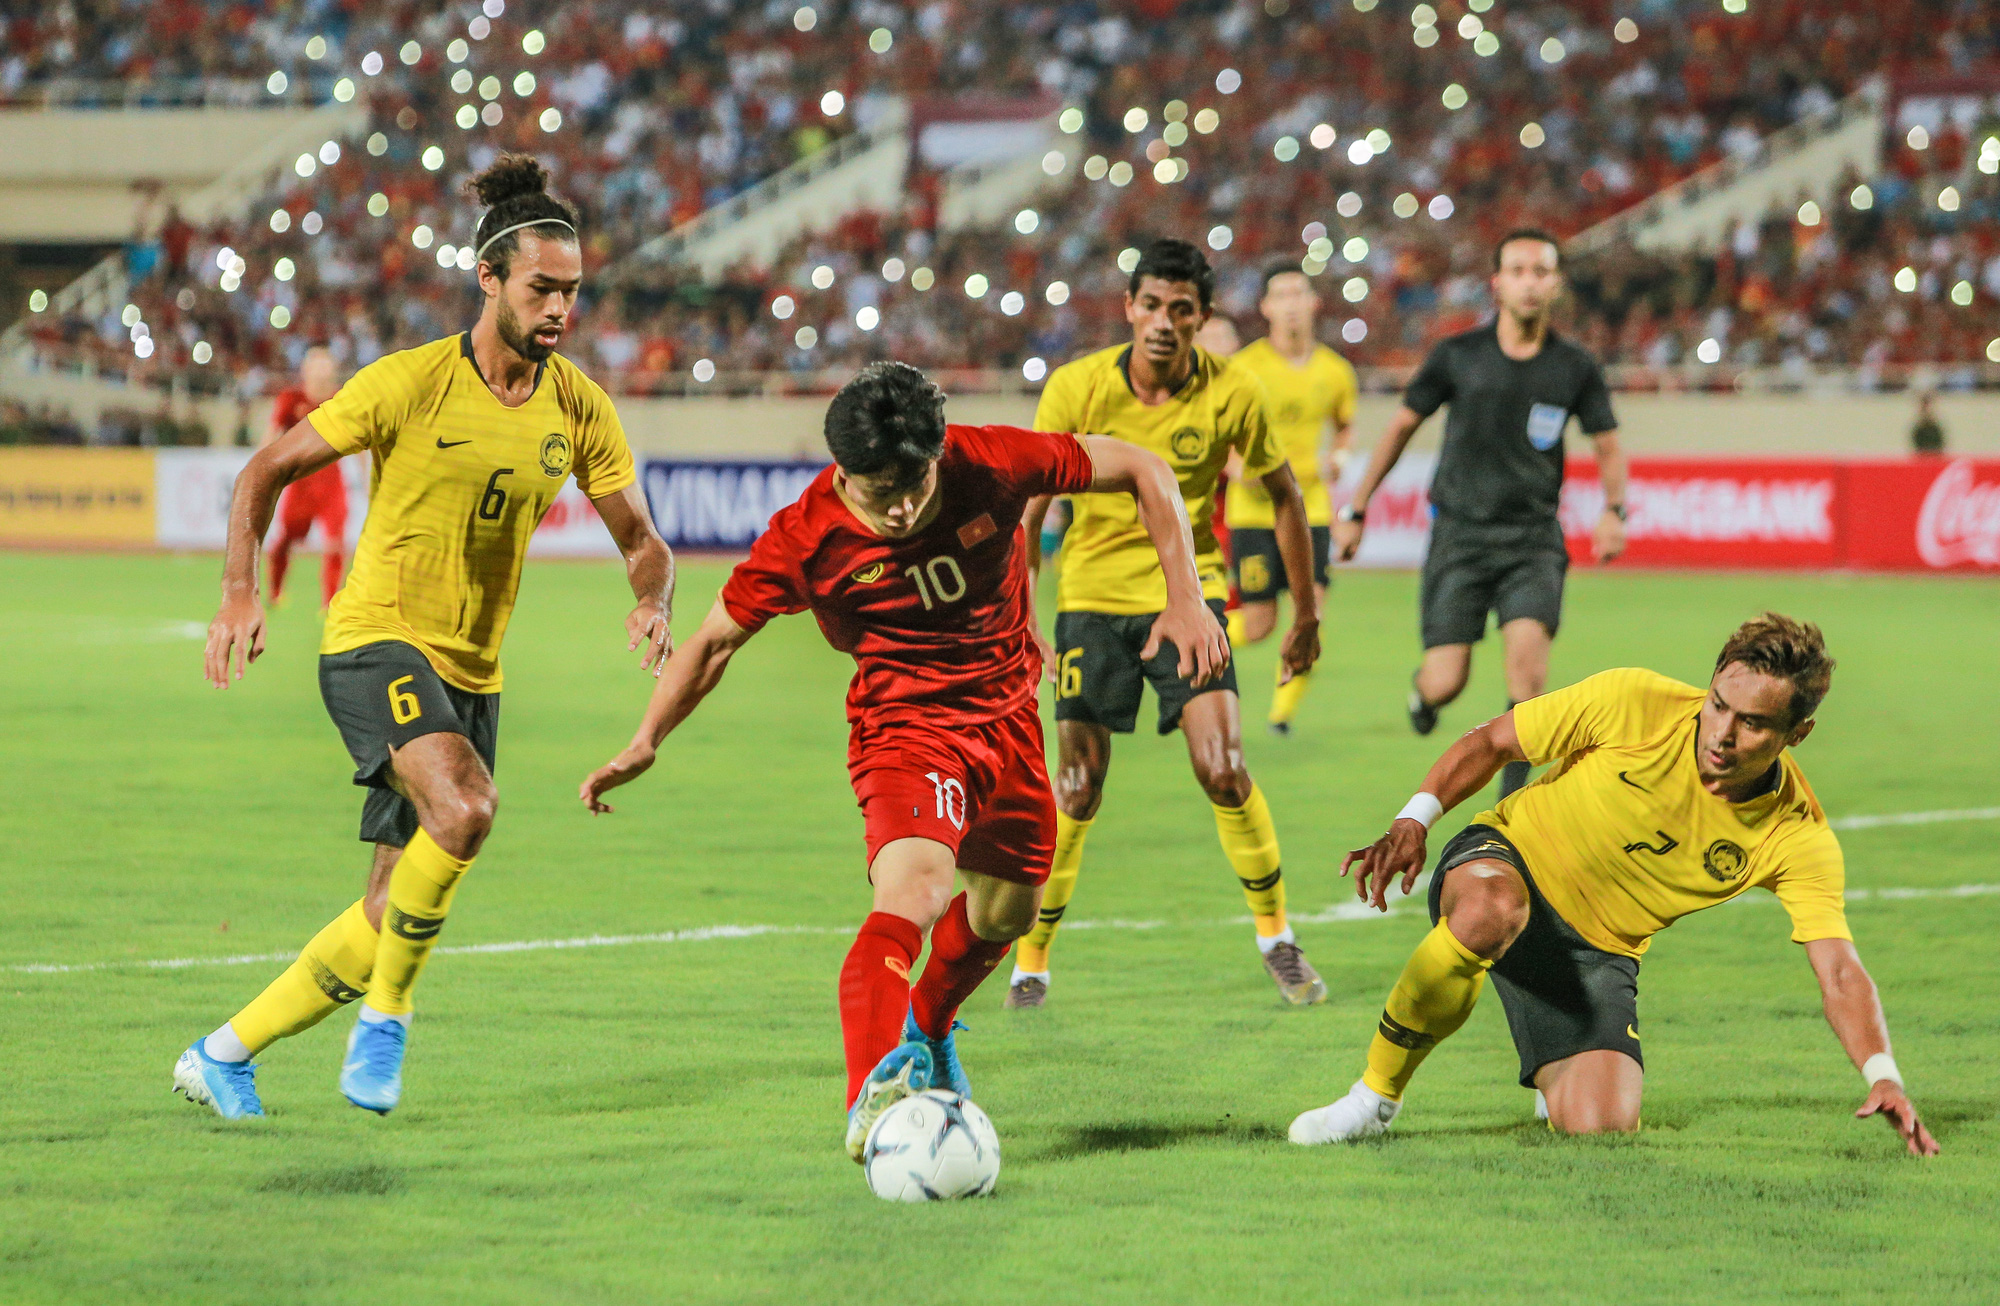 Vòng loại World Cup 2022 đang diễn ra rất sôi động và táo bạo. Những màn rượt đuổi nghẹt thở trên sân cỏ đã thu hút được sự quan tâm của rất nhiều người. Hãy cùng đón xem trận đấu giữa Việt Nam và Malaysia, với hy vọng đội tuyển Việt Nam sẽ giành được chiến thắng đầy hứa hẹn.